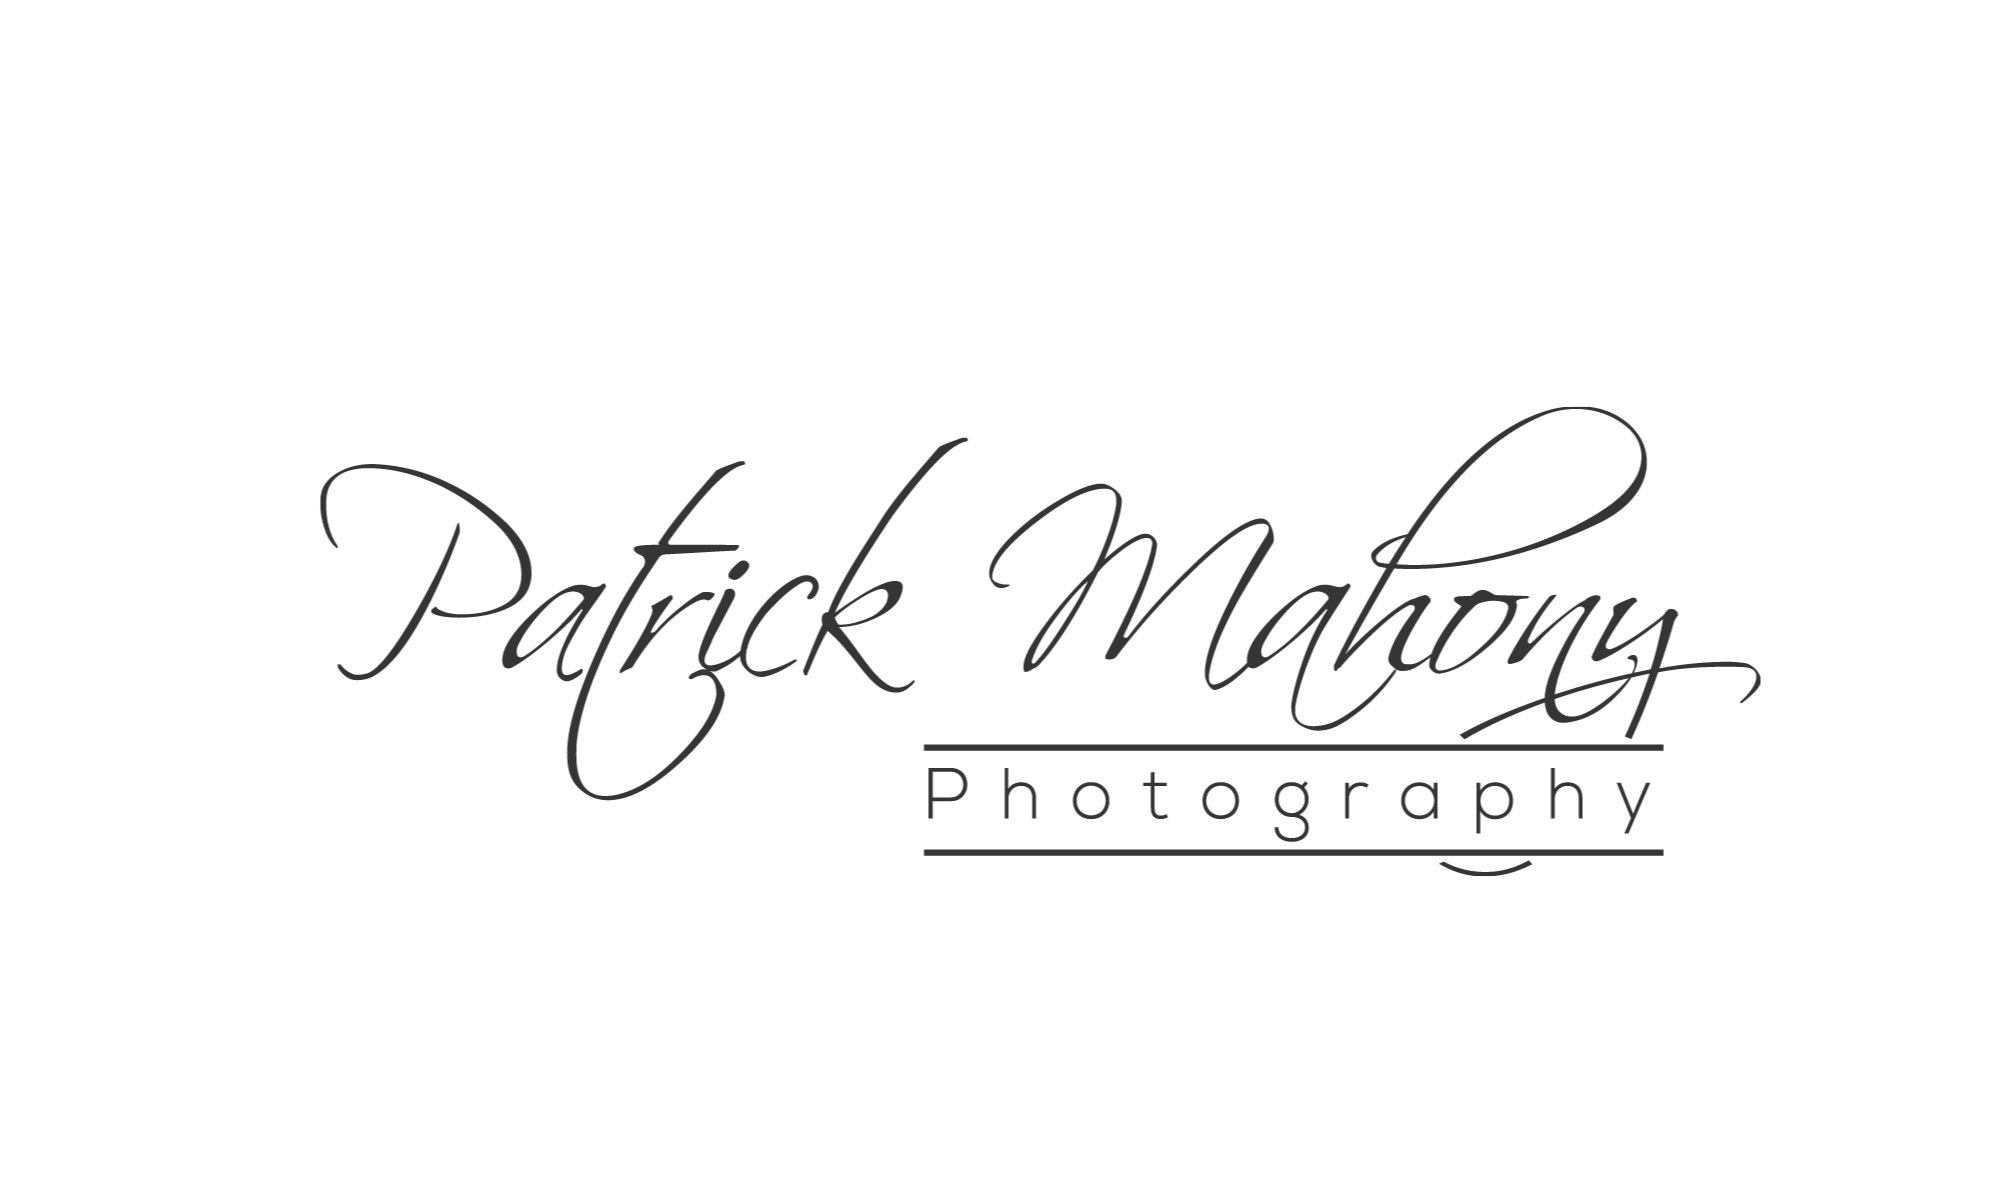 Patrick Mahony Photography